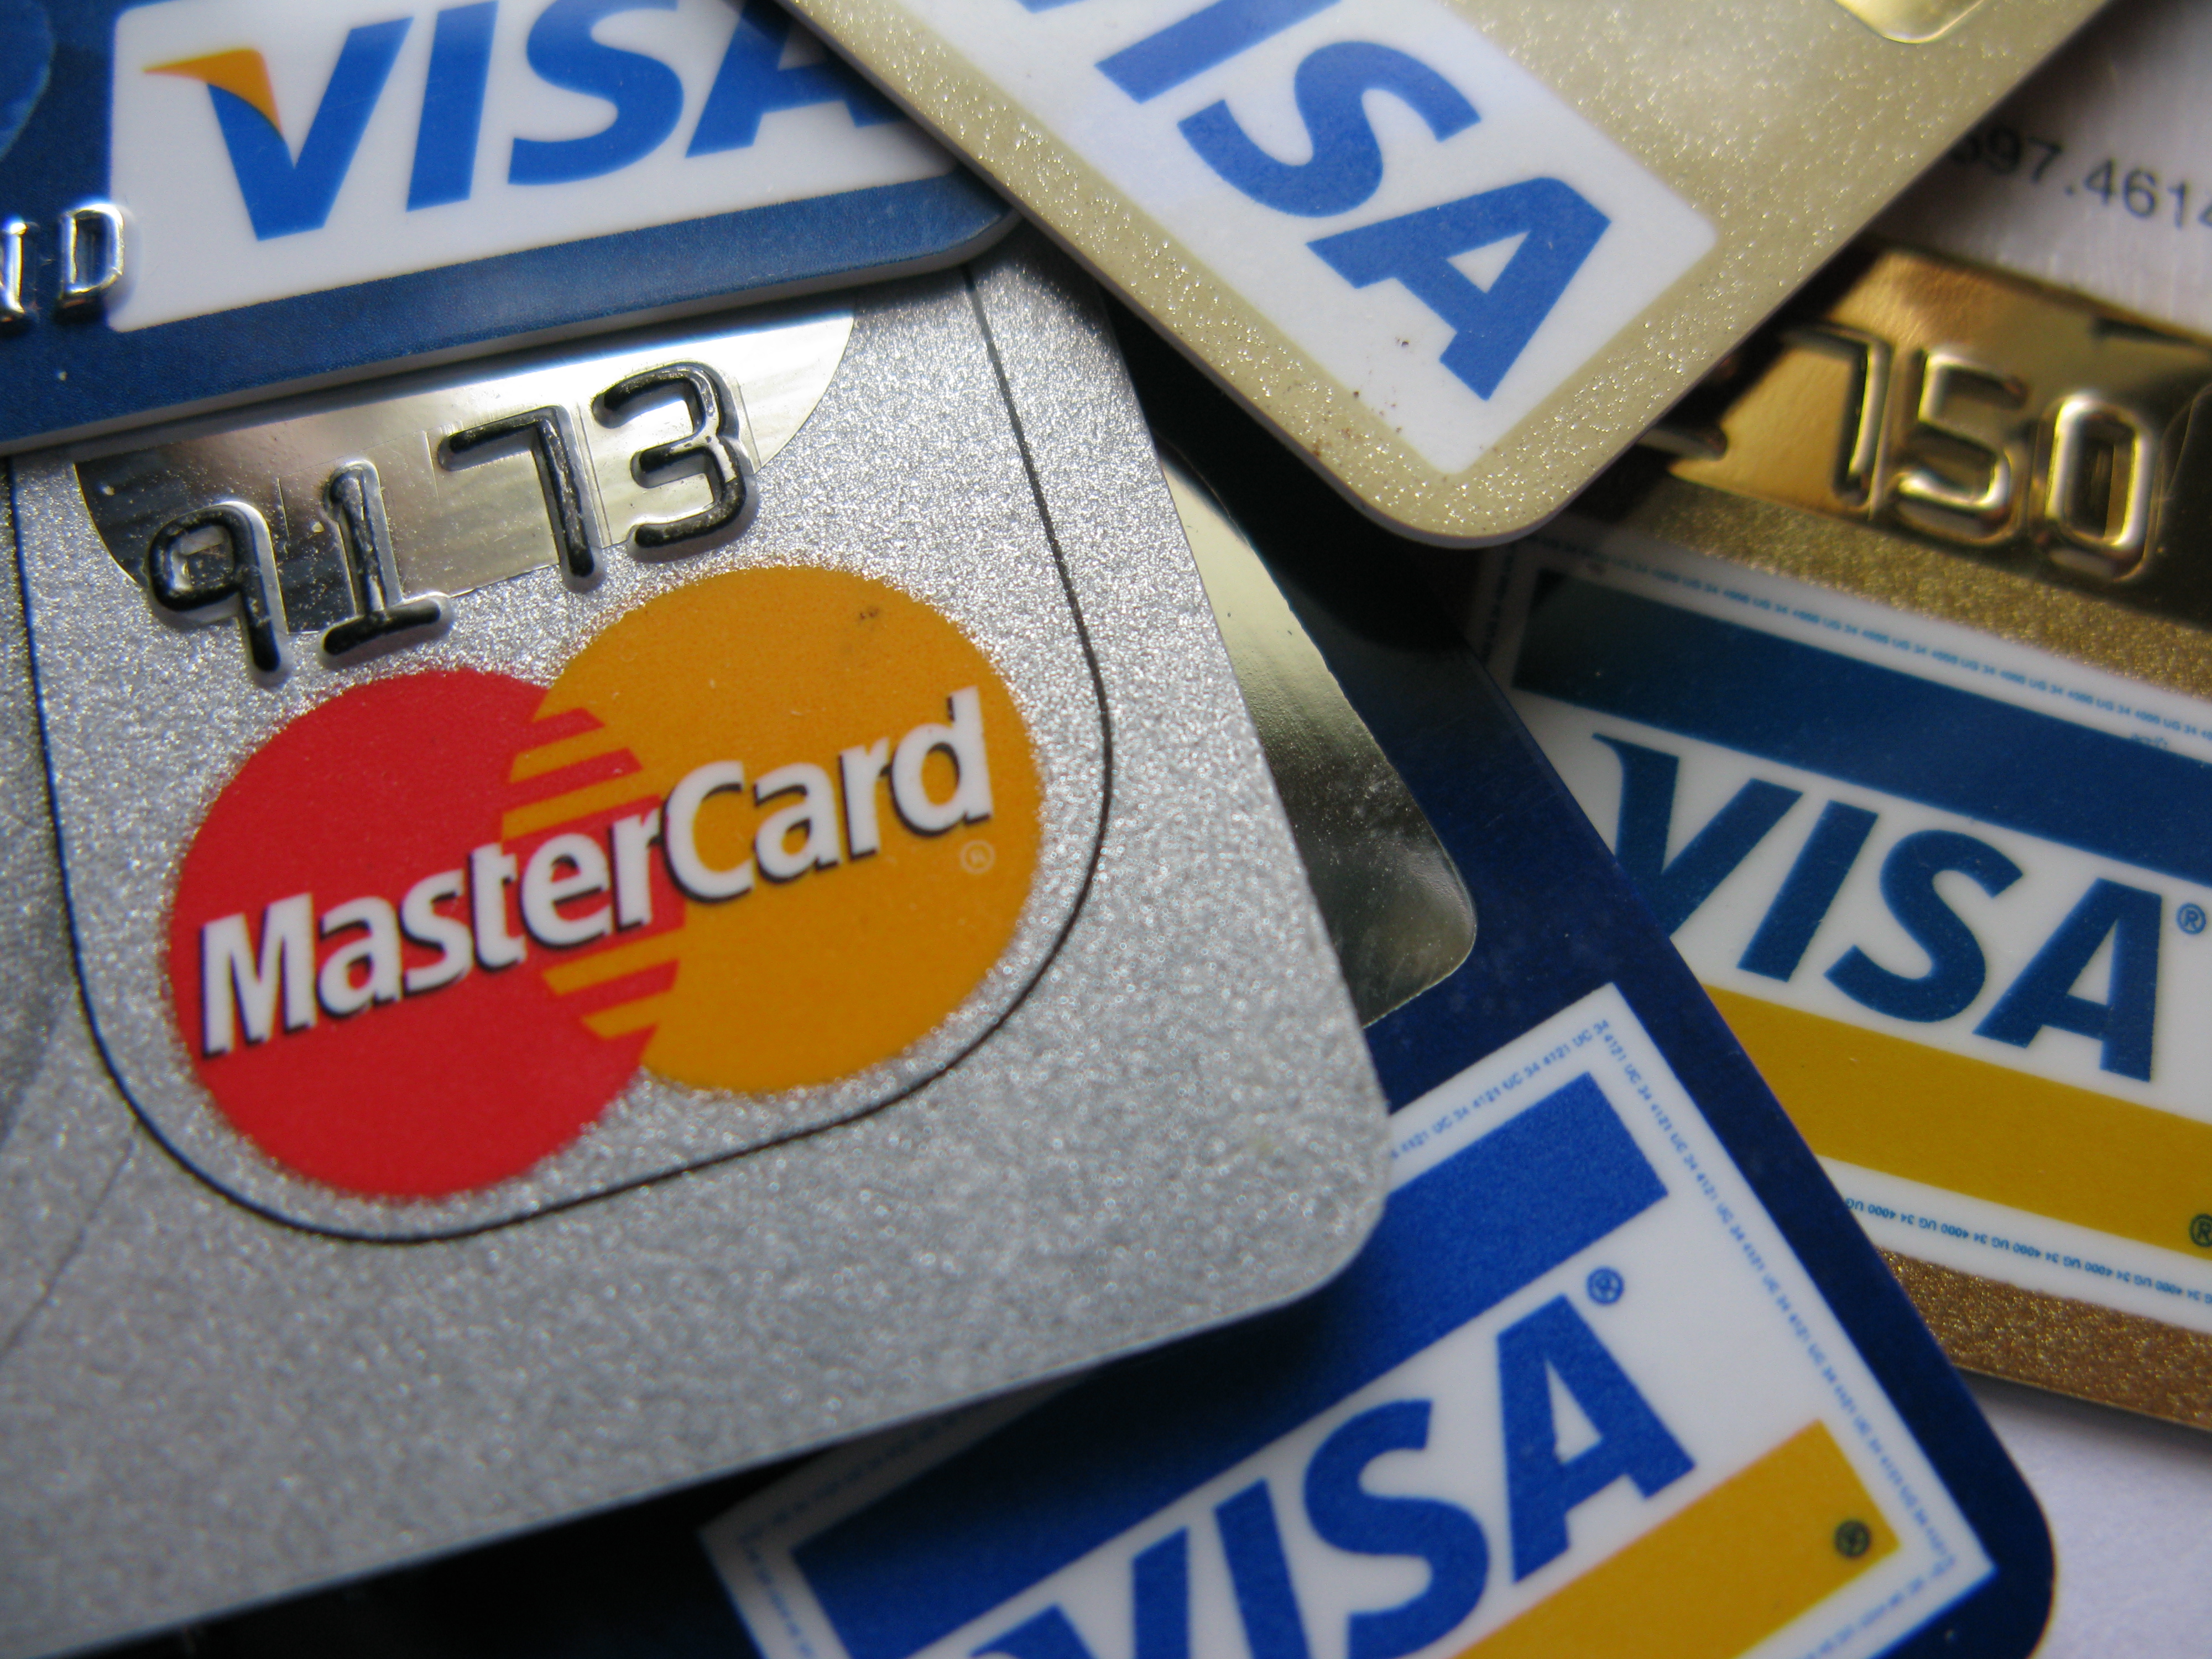 Visa и MasterCard запускают в России новую технологию бесконтактных платежей 